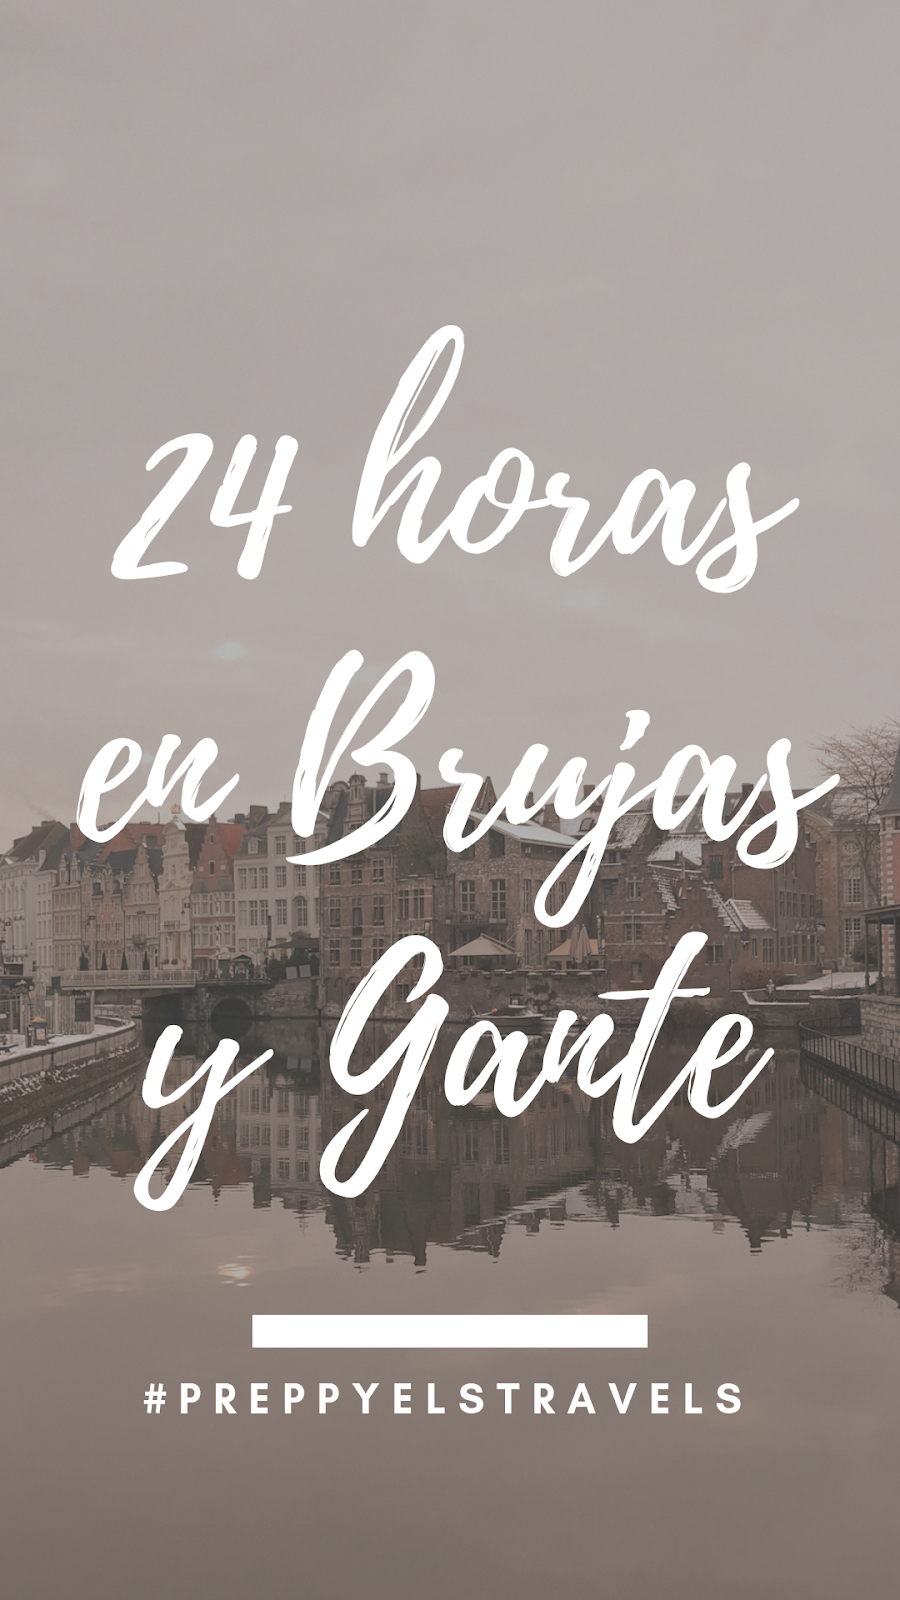 brujas-y-gante-24-horas-qué-ver-belgica